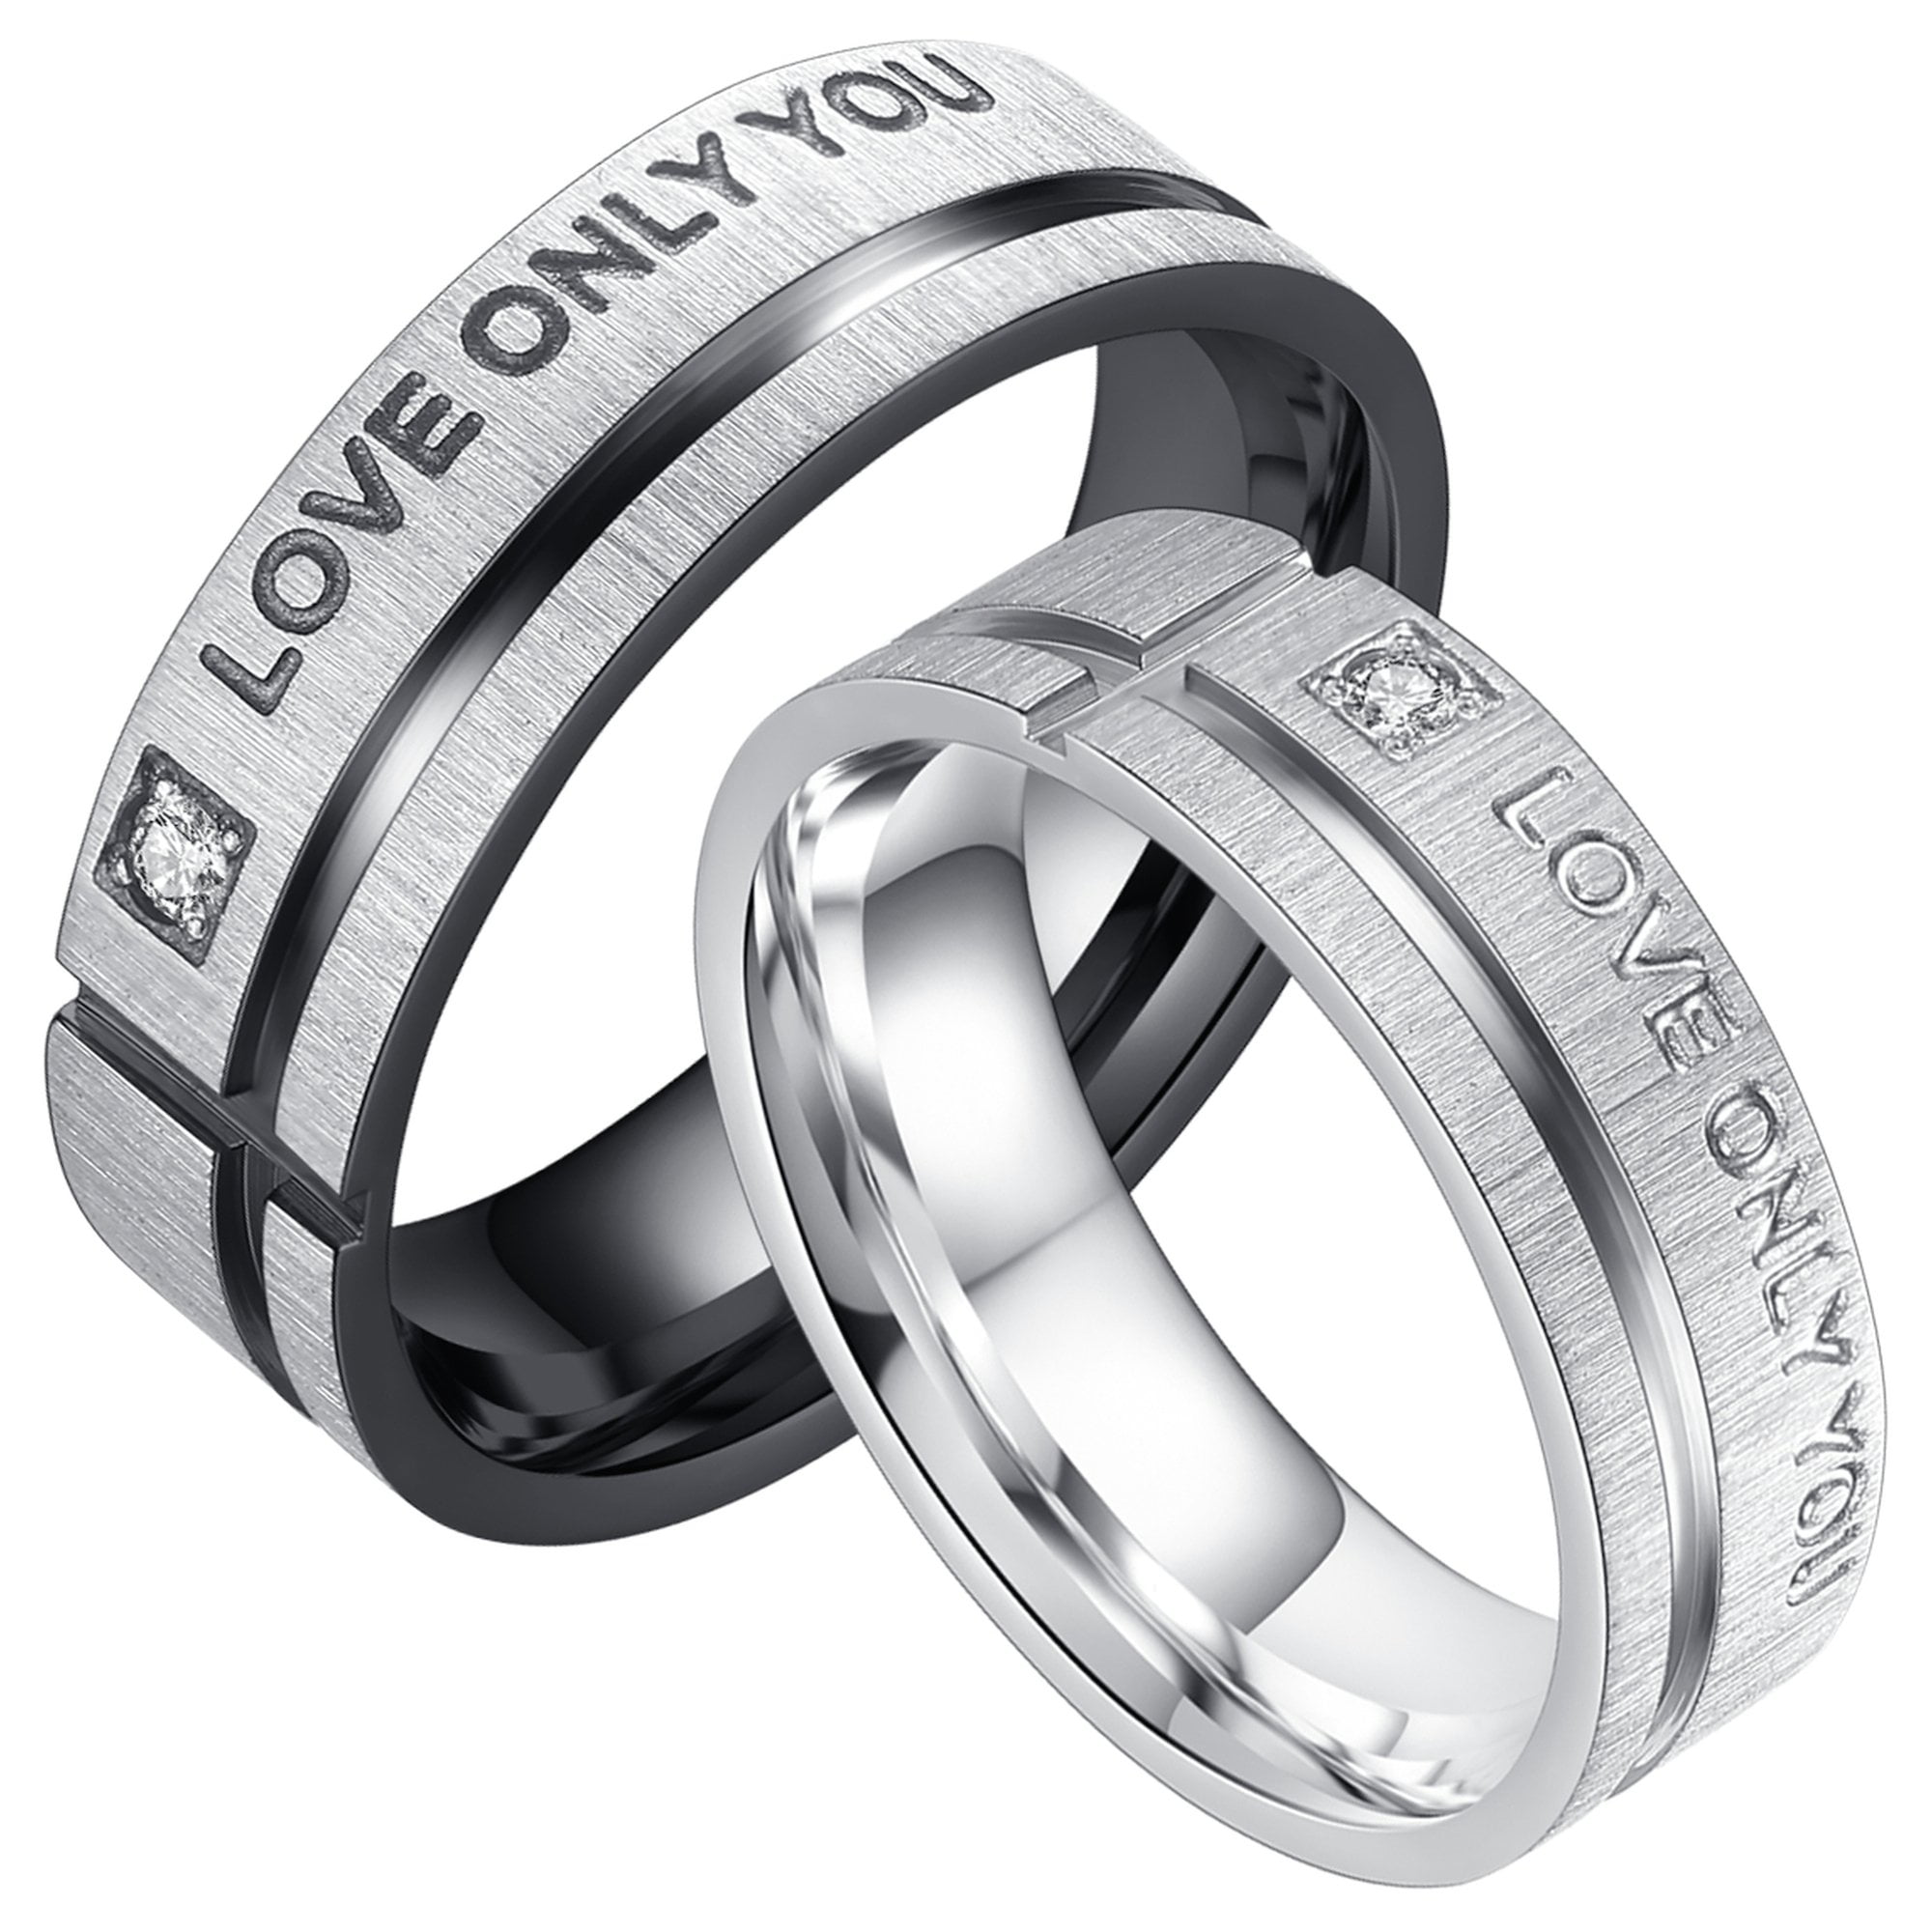 Mens Wedding Ring Women Promise Ring Gold Custom Engraved Ring Stainless Steel Anniversary Gift For Him Her